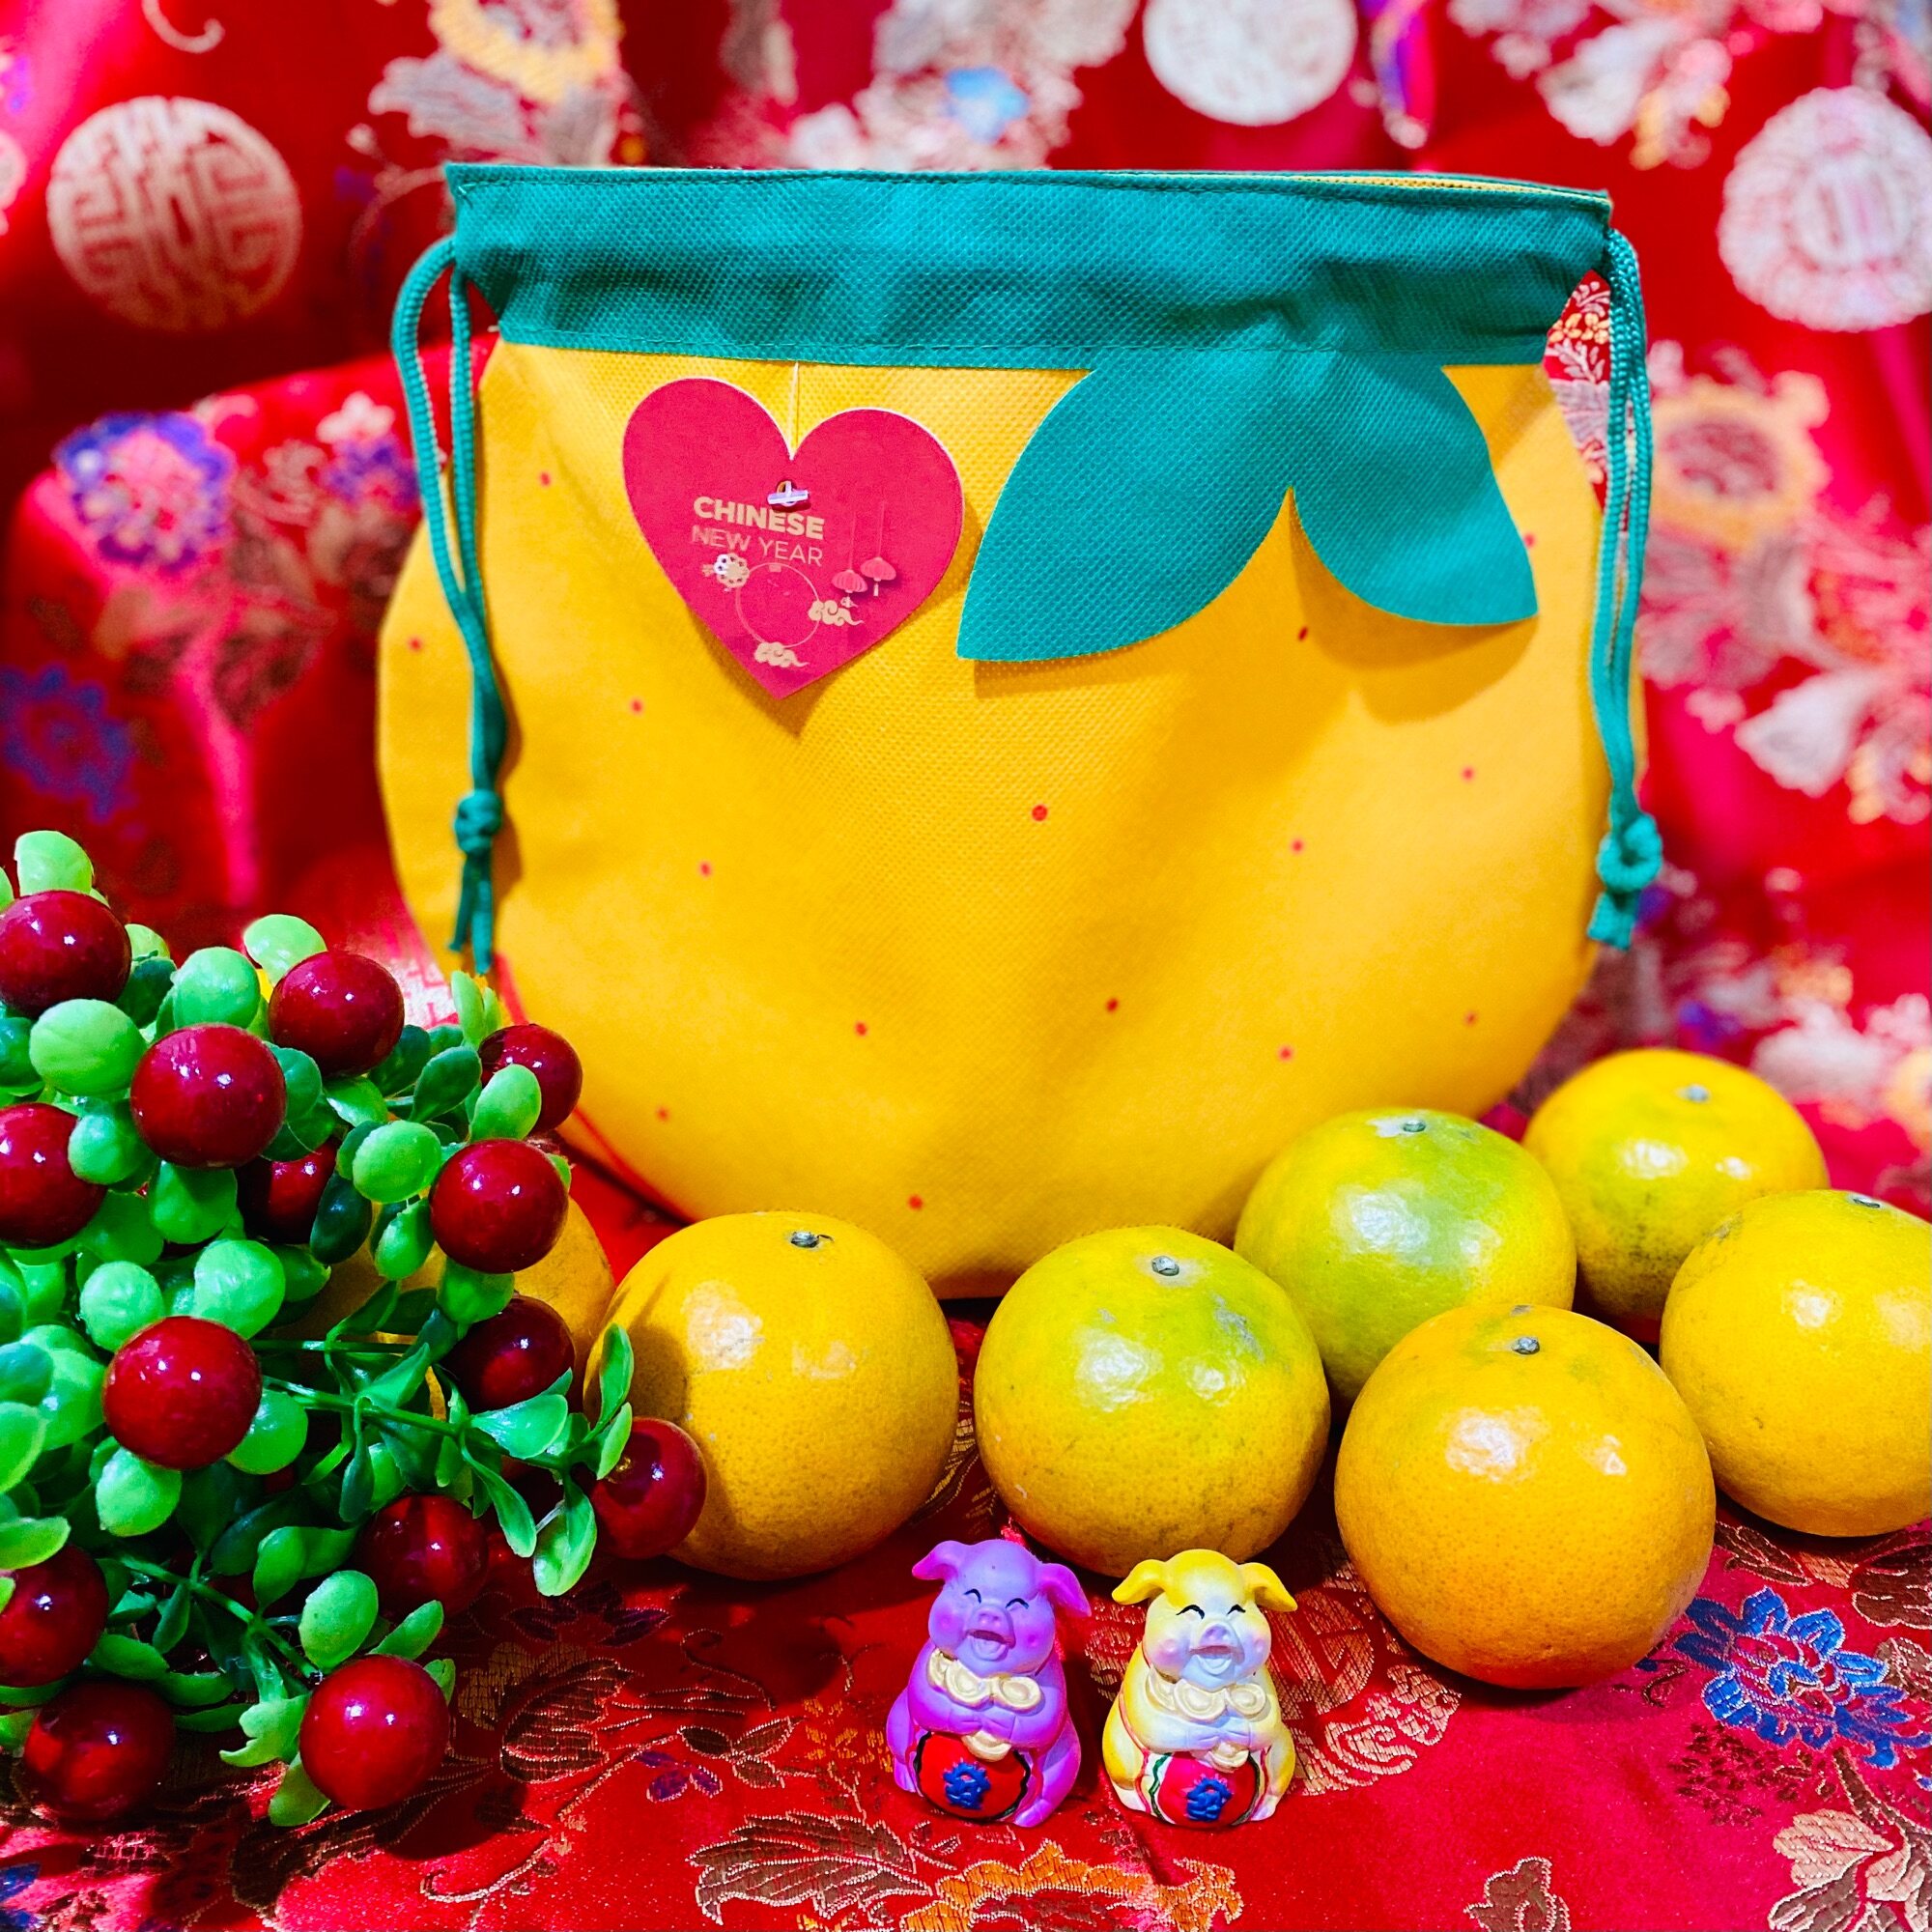 ถุงใส่ส้มตรุษจีน 🍊Orange Bag ถุงส้ม ใส่ส้มได้ 4 ผล หรือมากกว่า ถุงของขวัญ ถุงสีส้ม